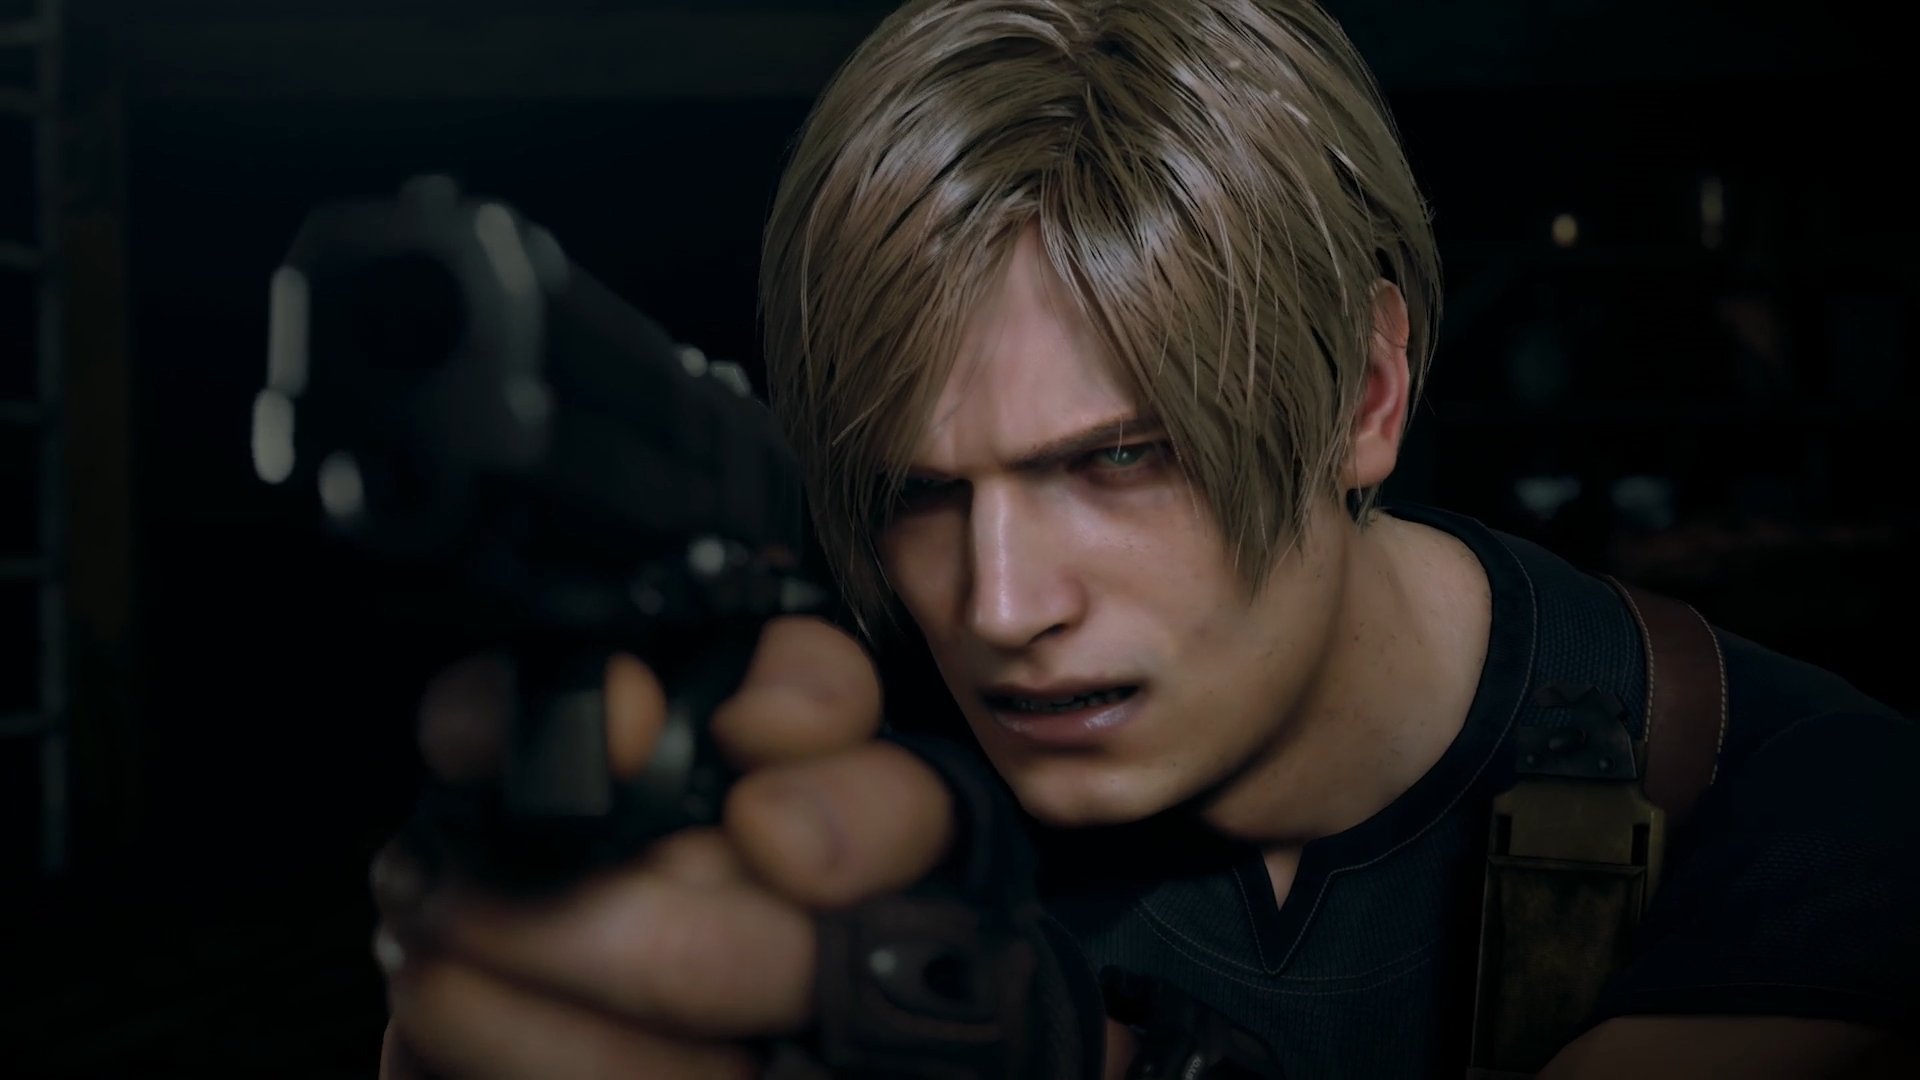 Lista de conquistas de Resident Evil 4 é vazada